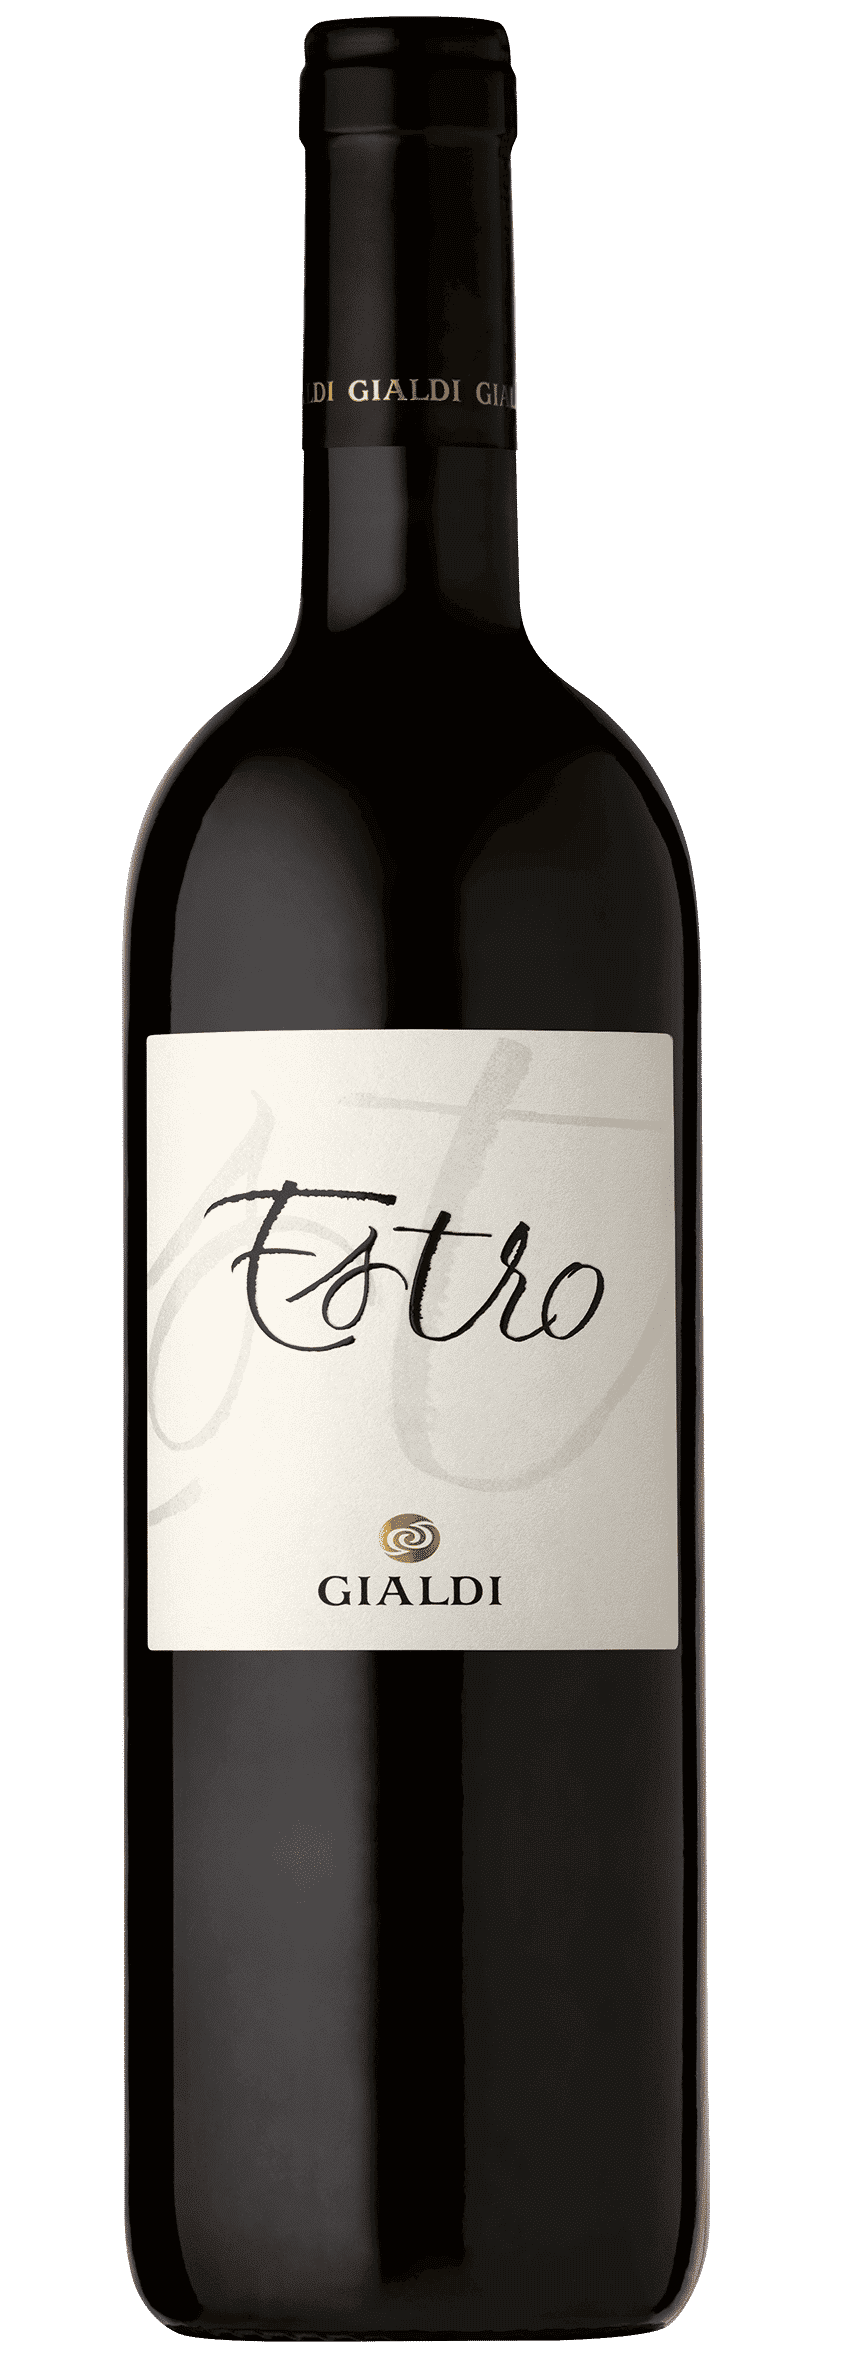 Estro - IGT della Svizzera italiana - 2018 - Gialdi